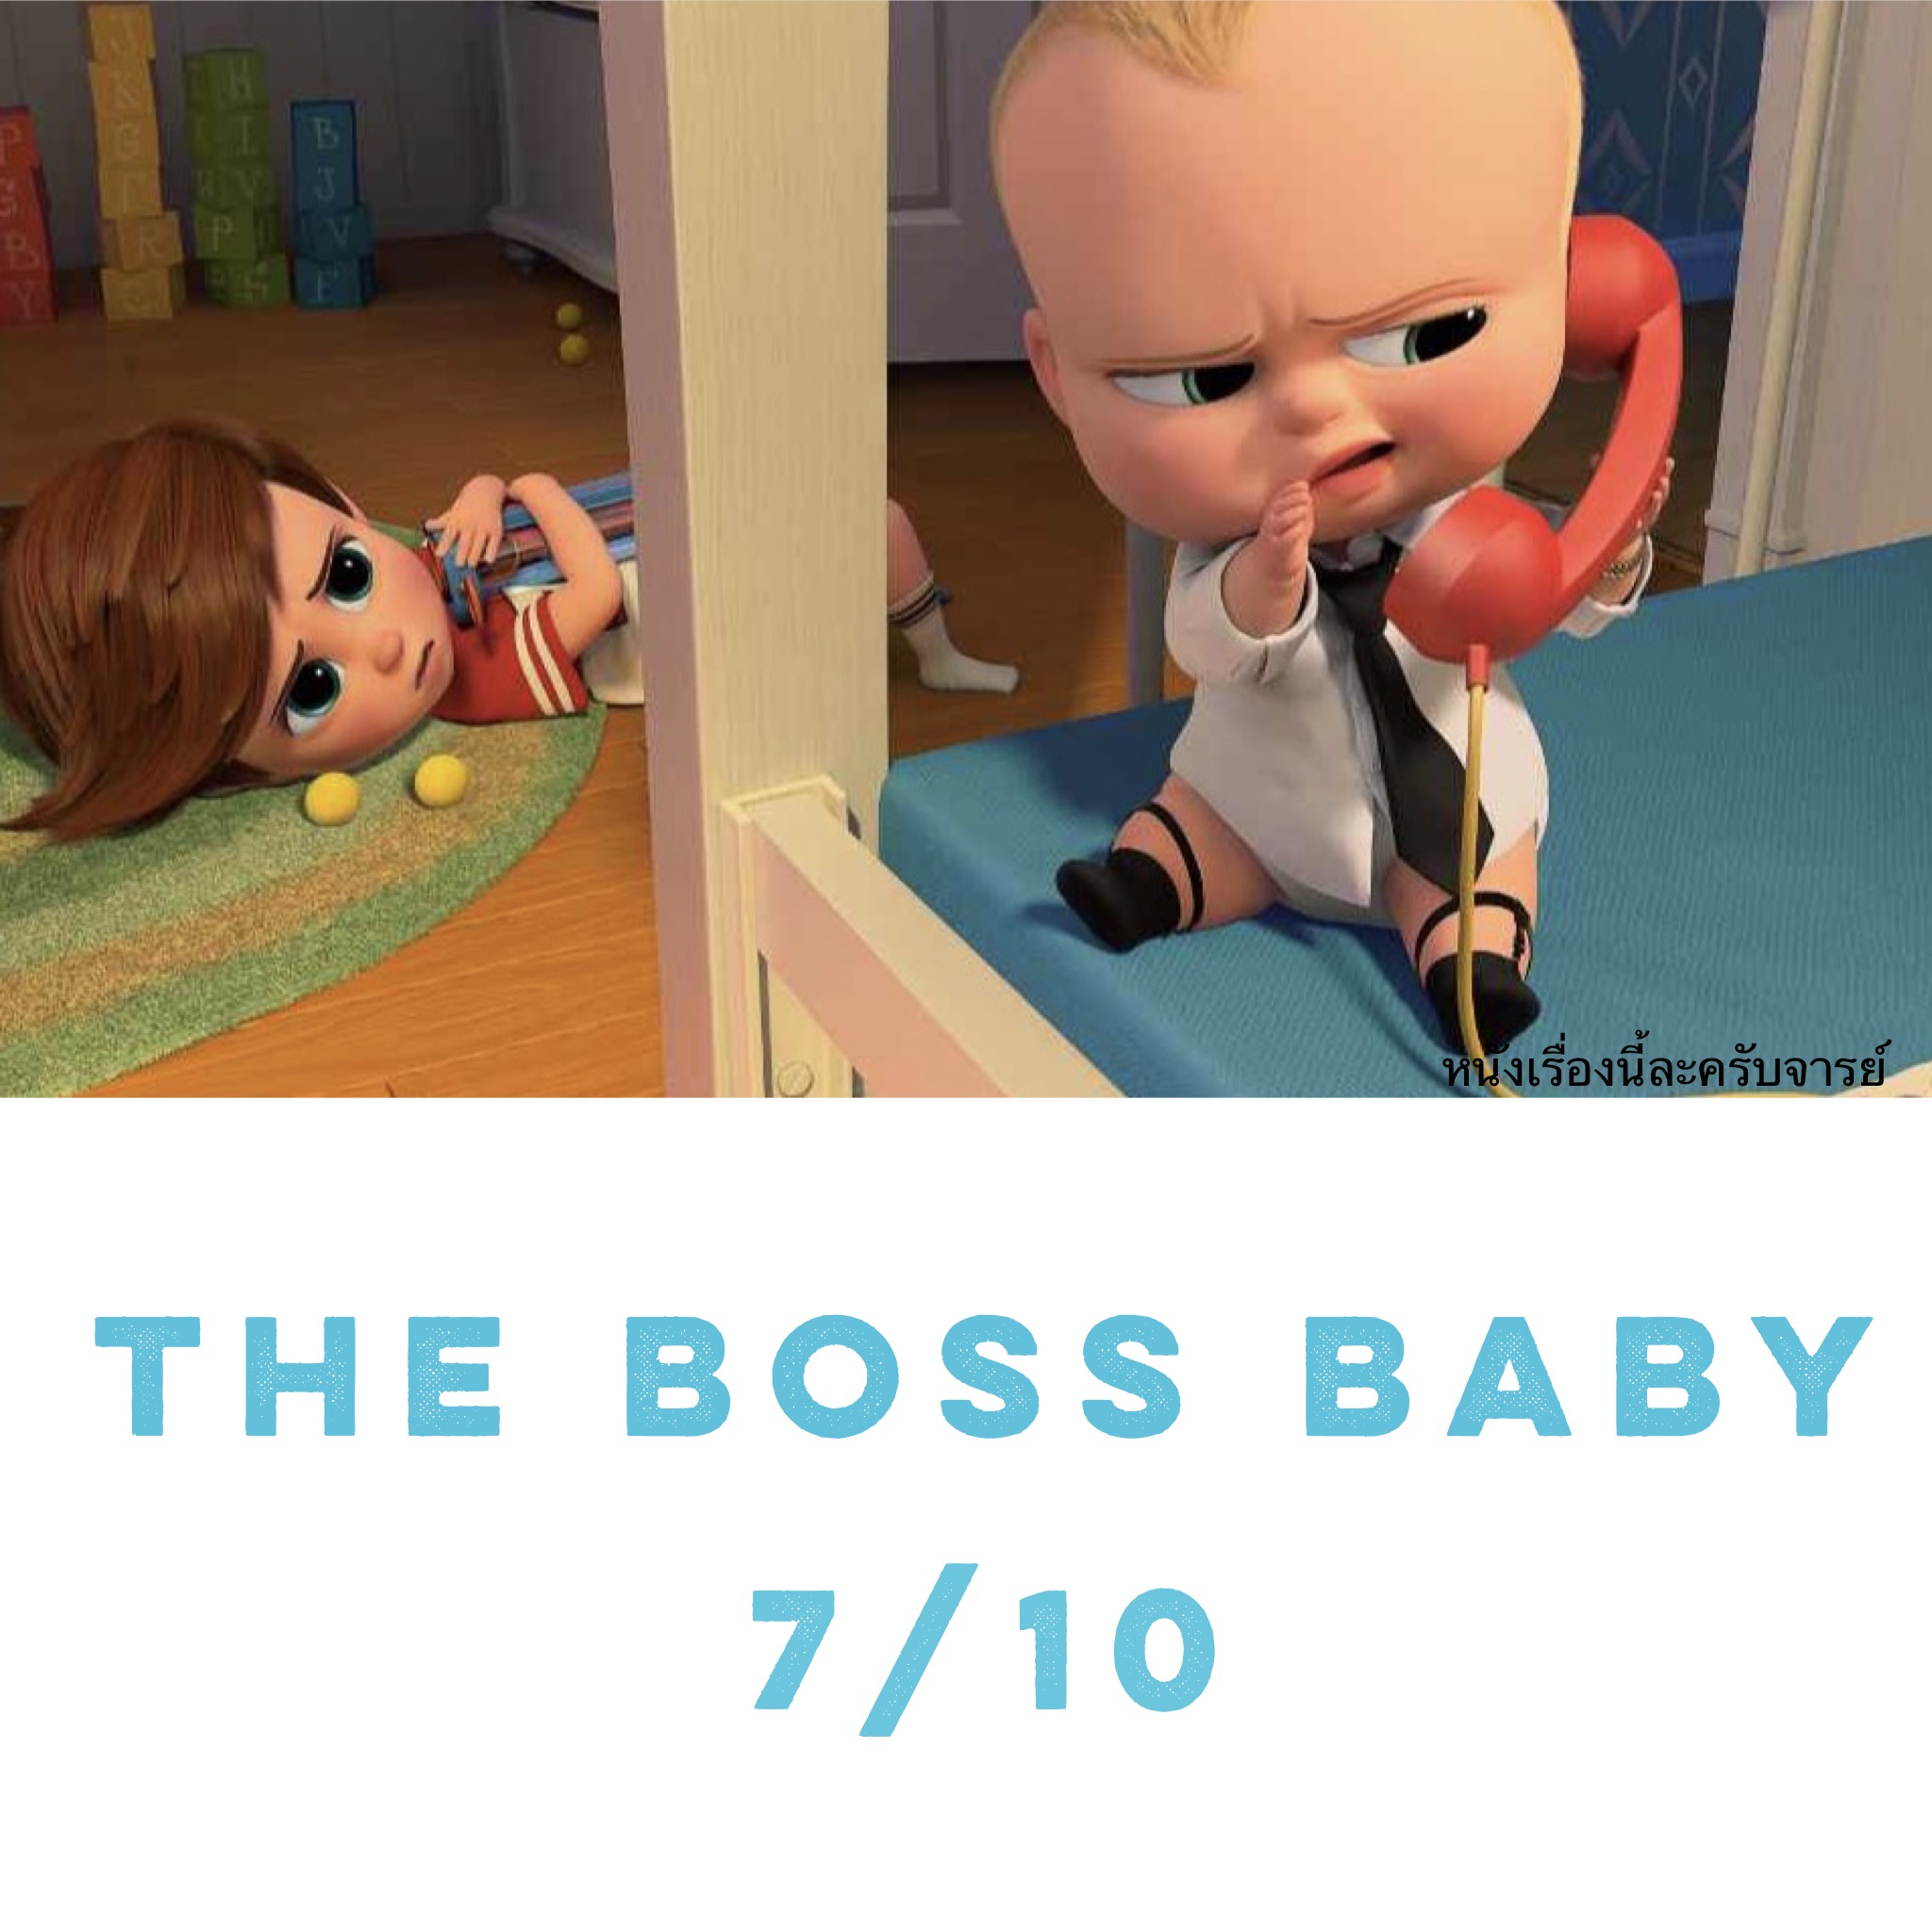 Boss baby pantip